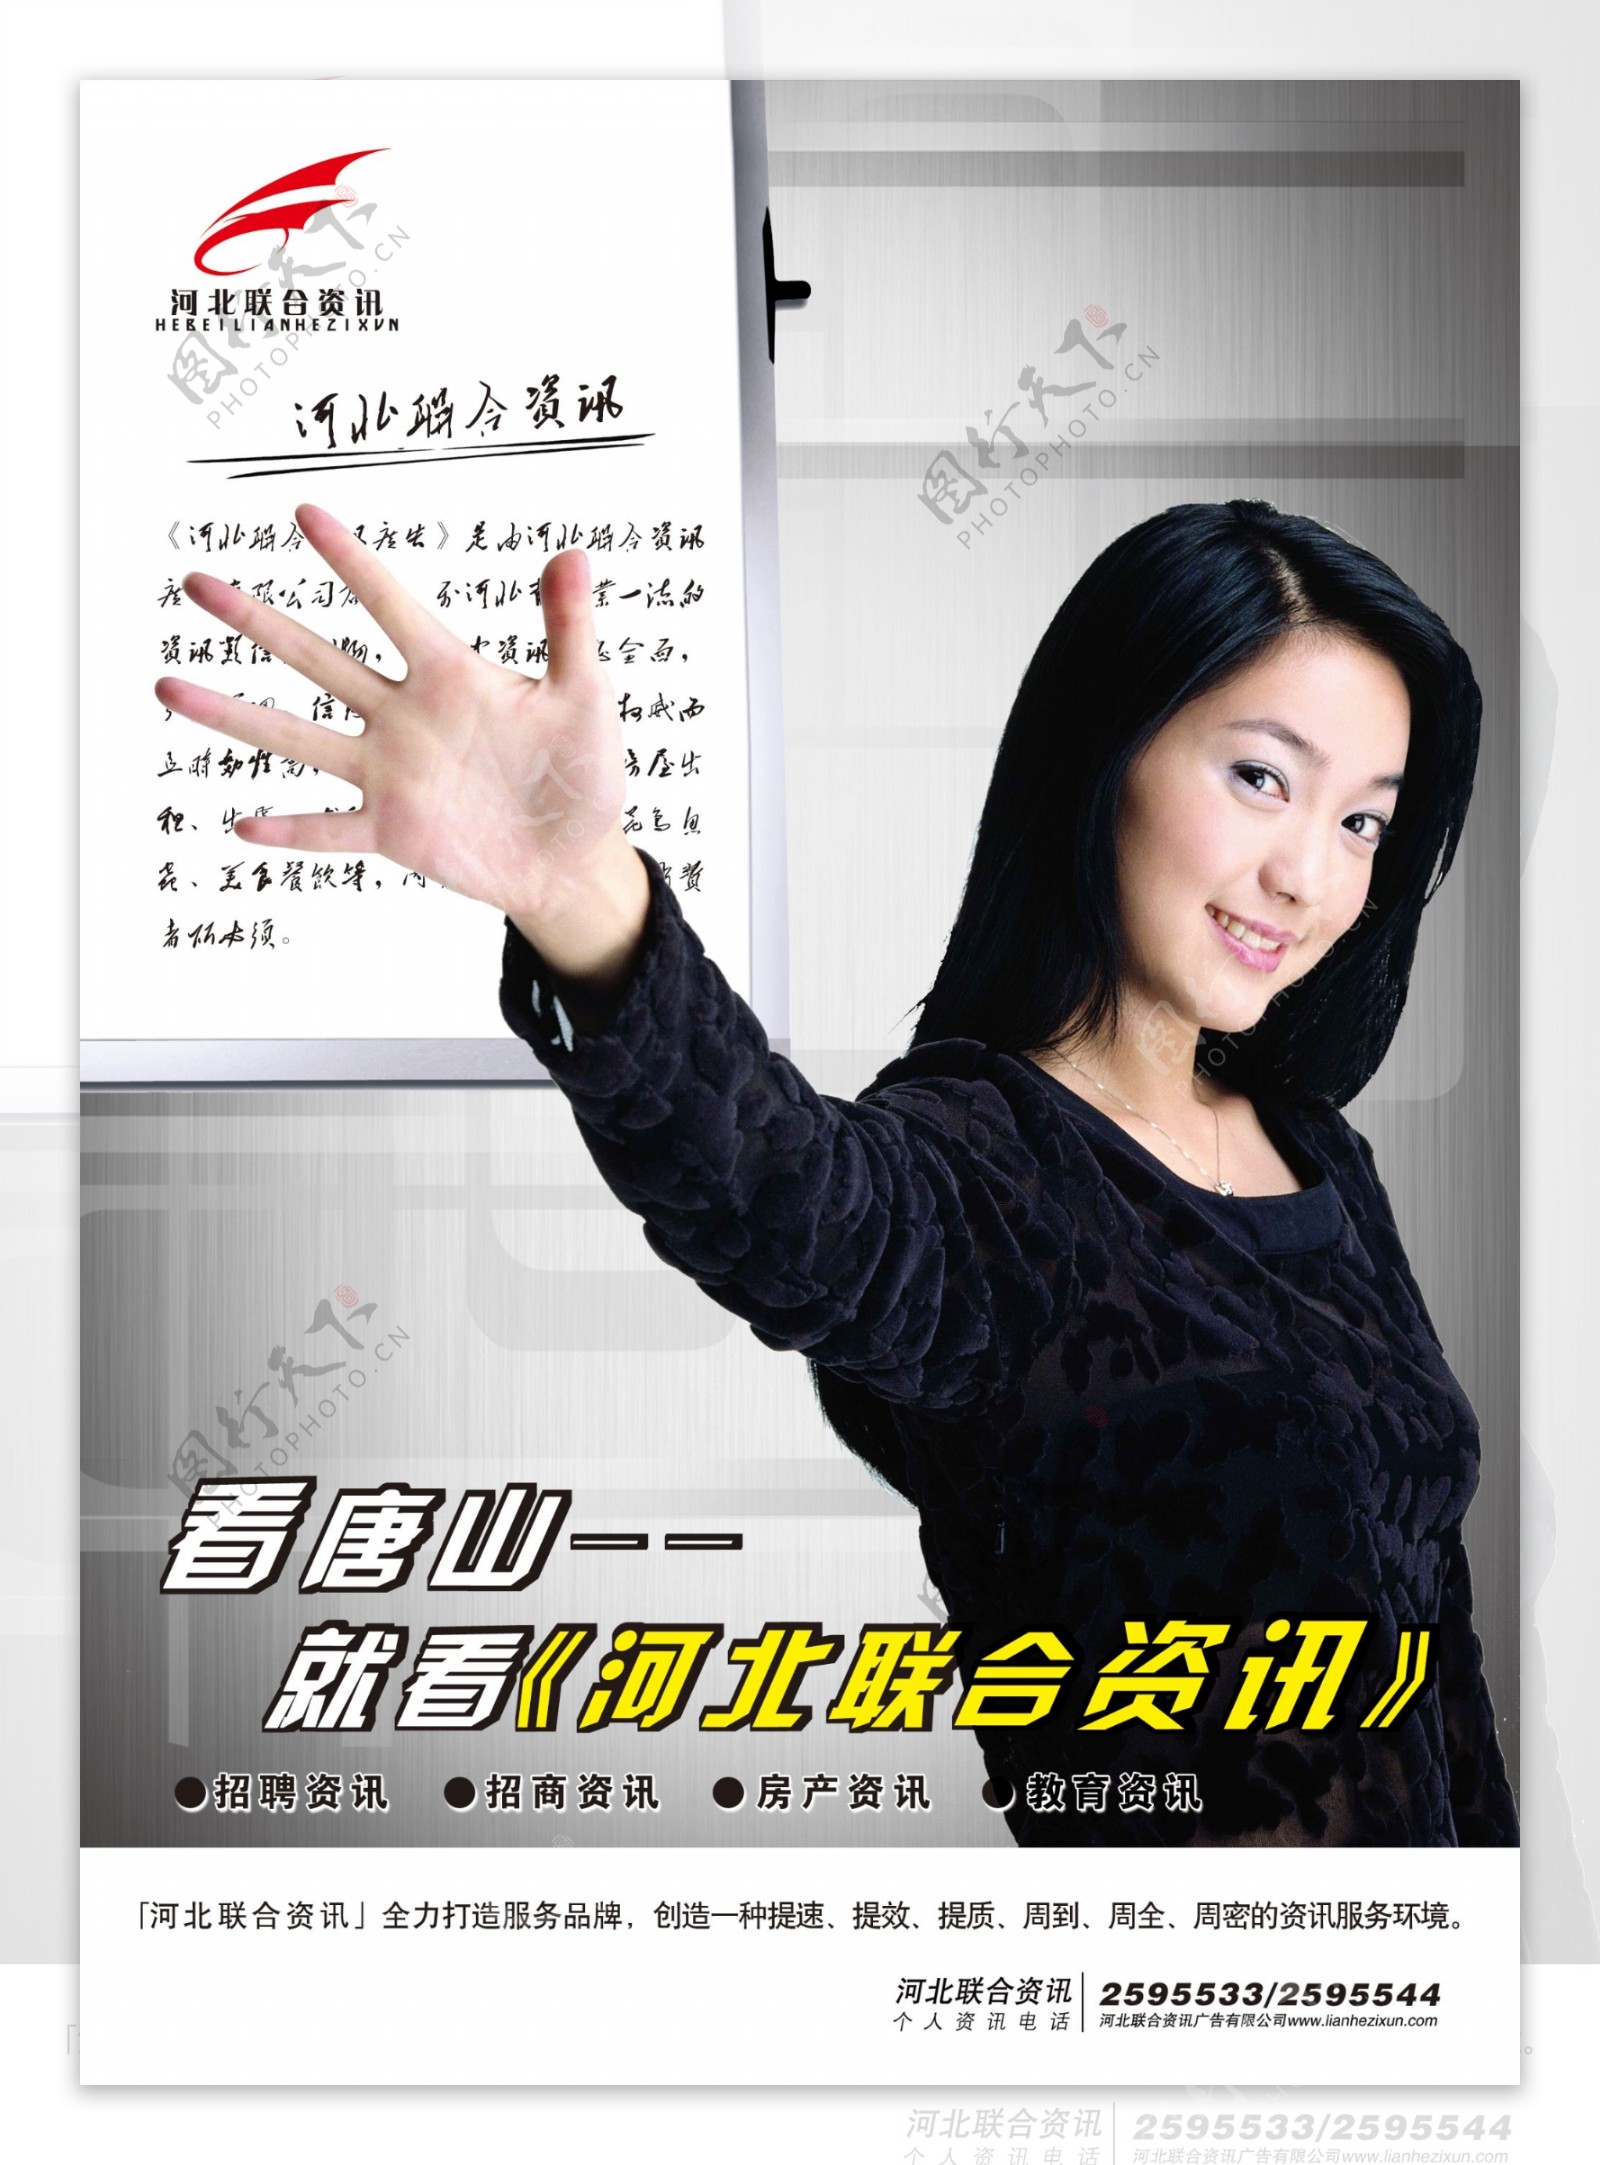 龙腾广告平面广告PSD分层素材源文件社会公益类广告海报人物女性